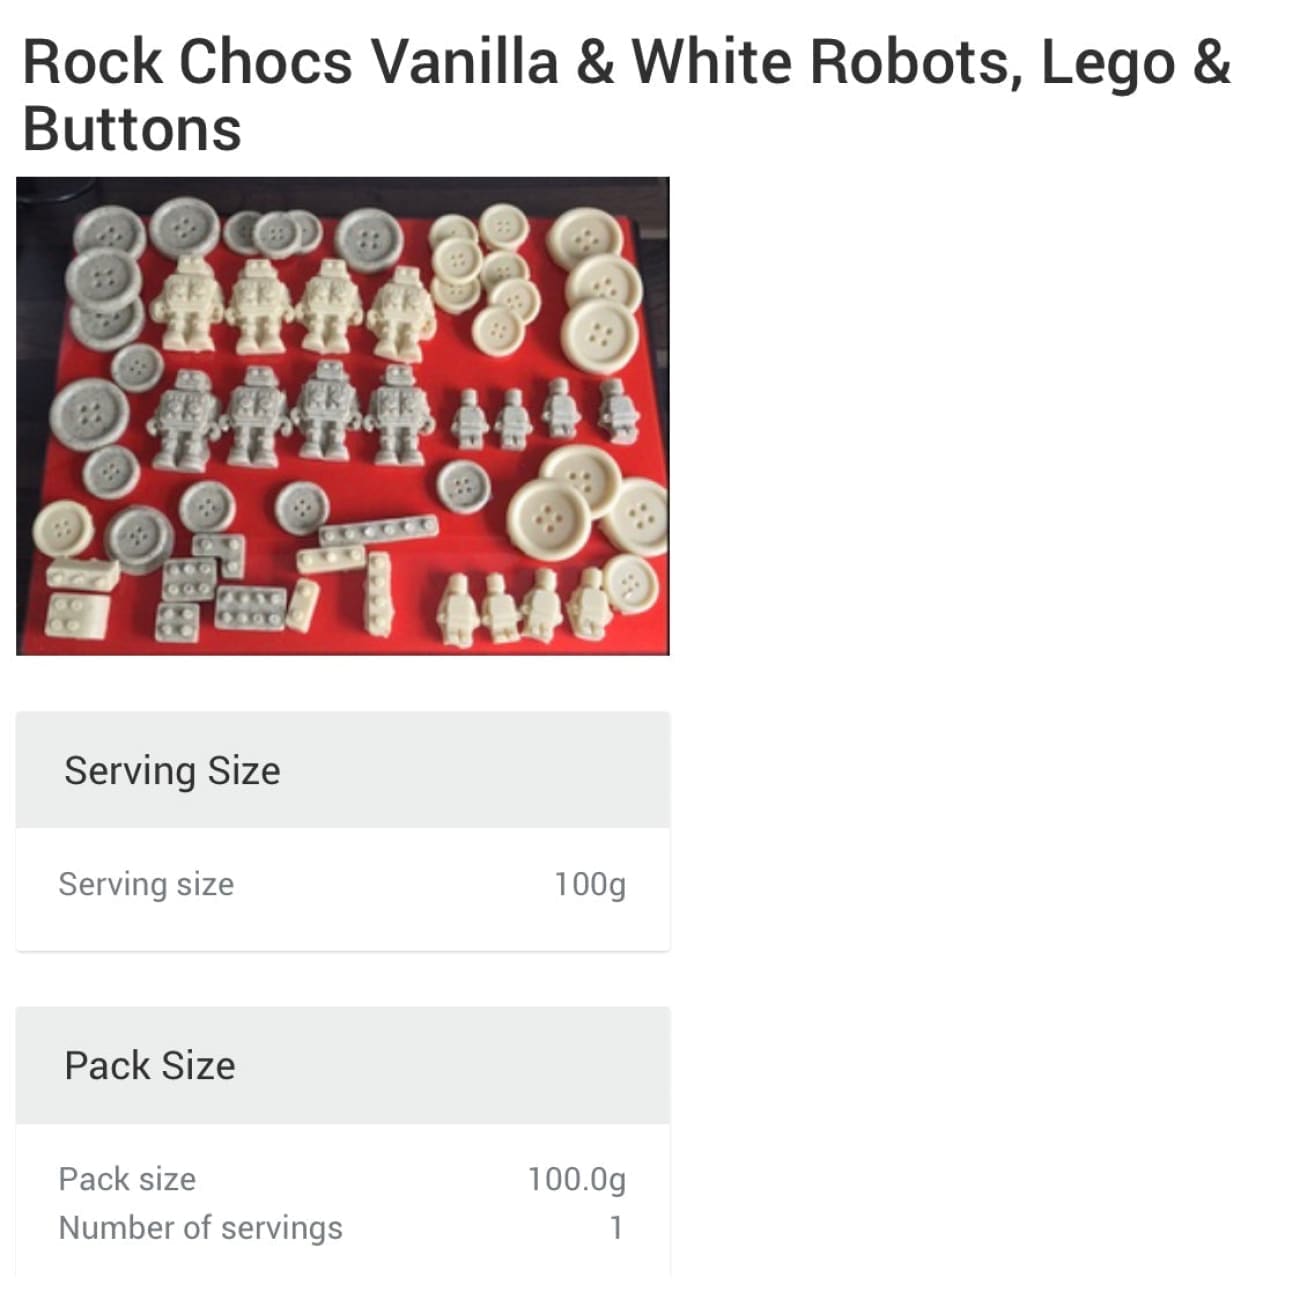 Vegan Chocolate Robots, Lego & Buttons Rock Chocs 